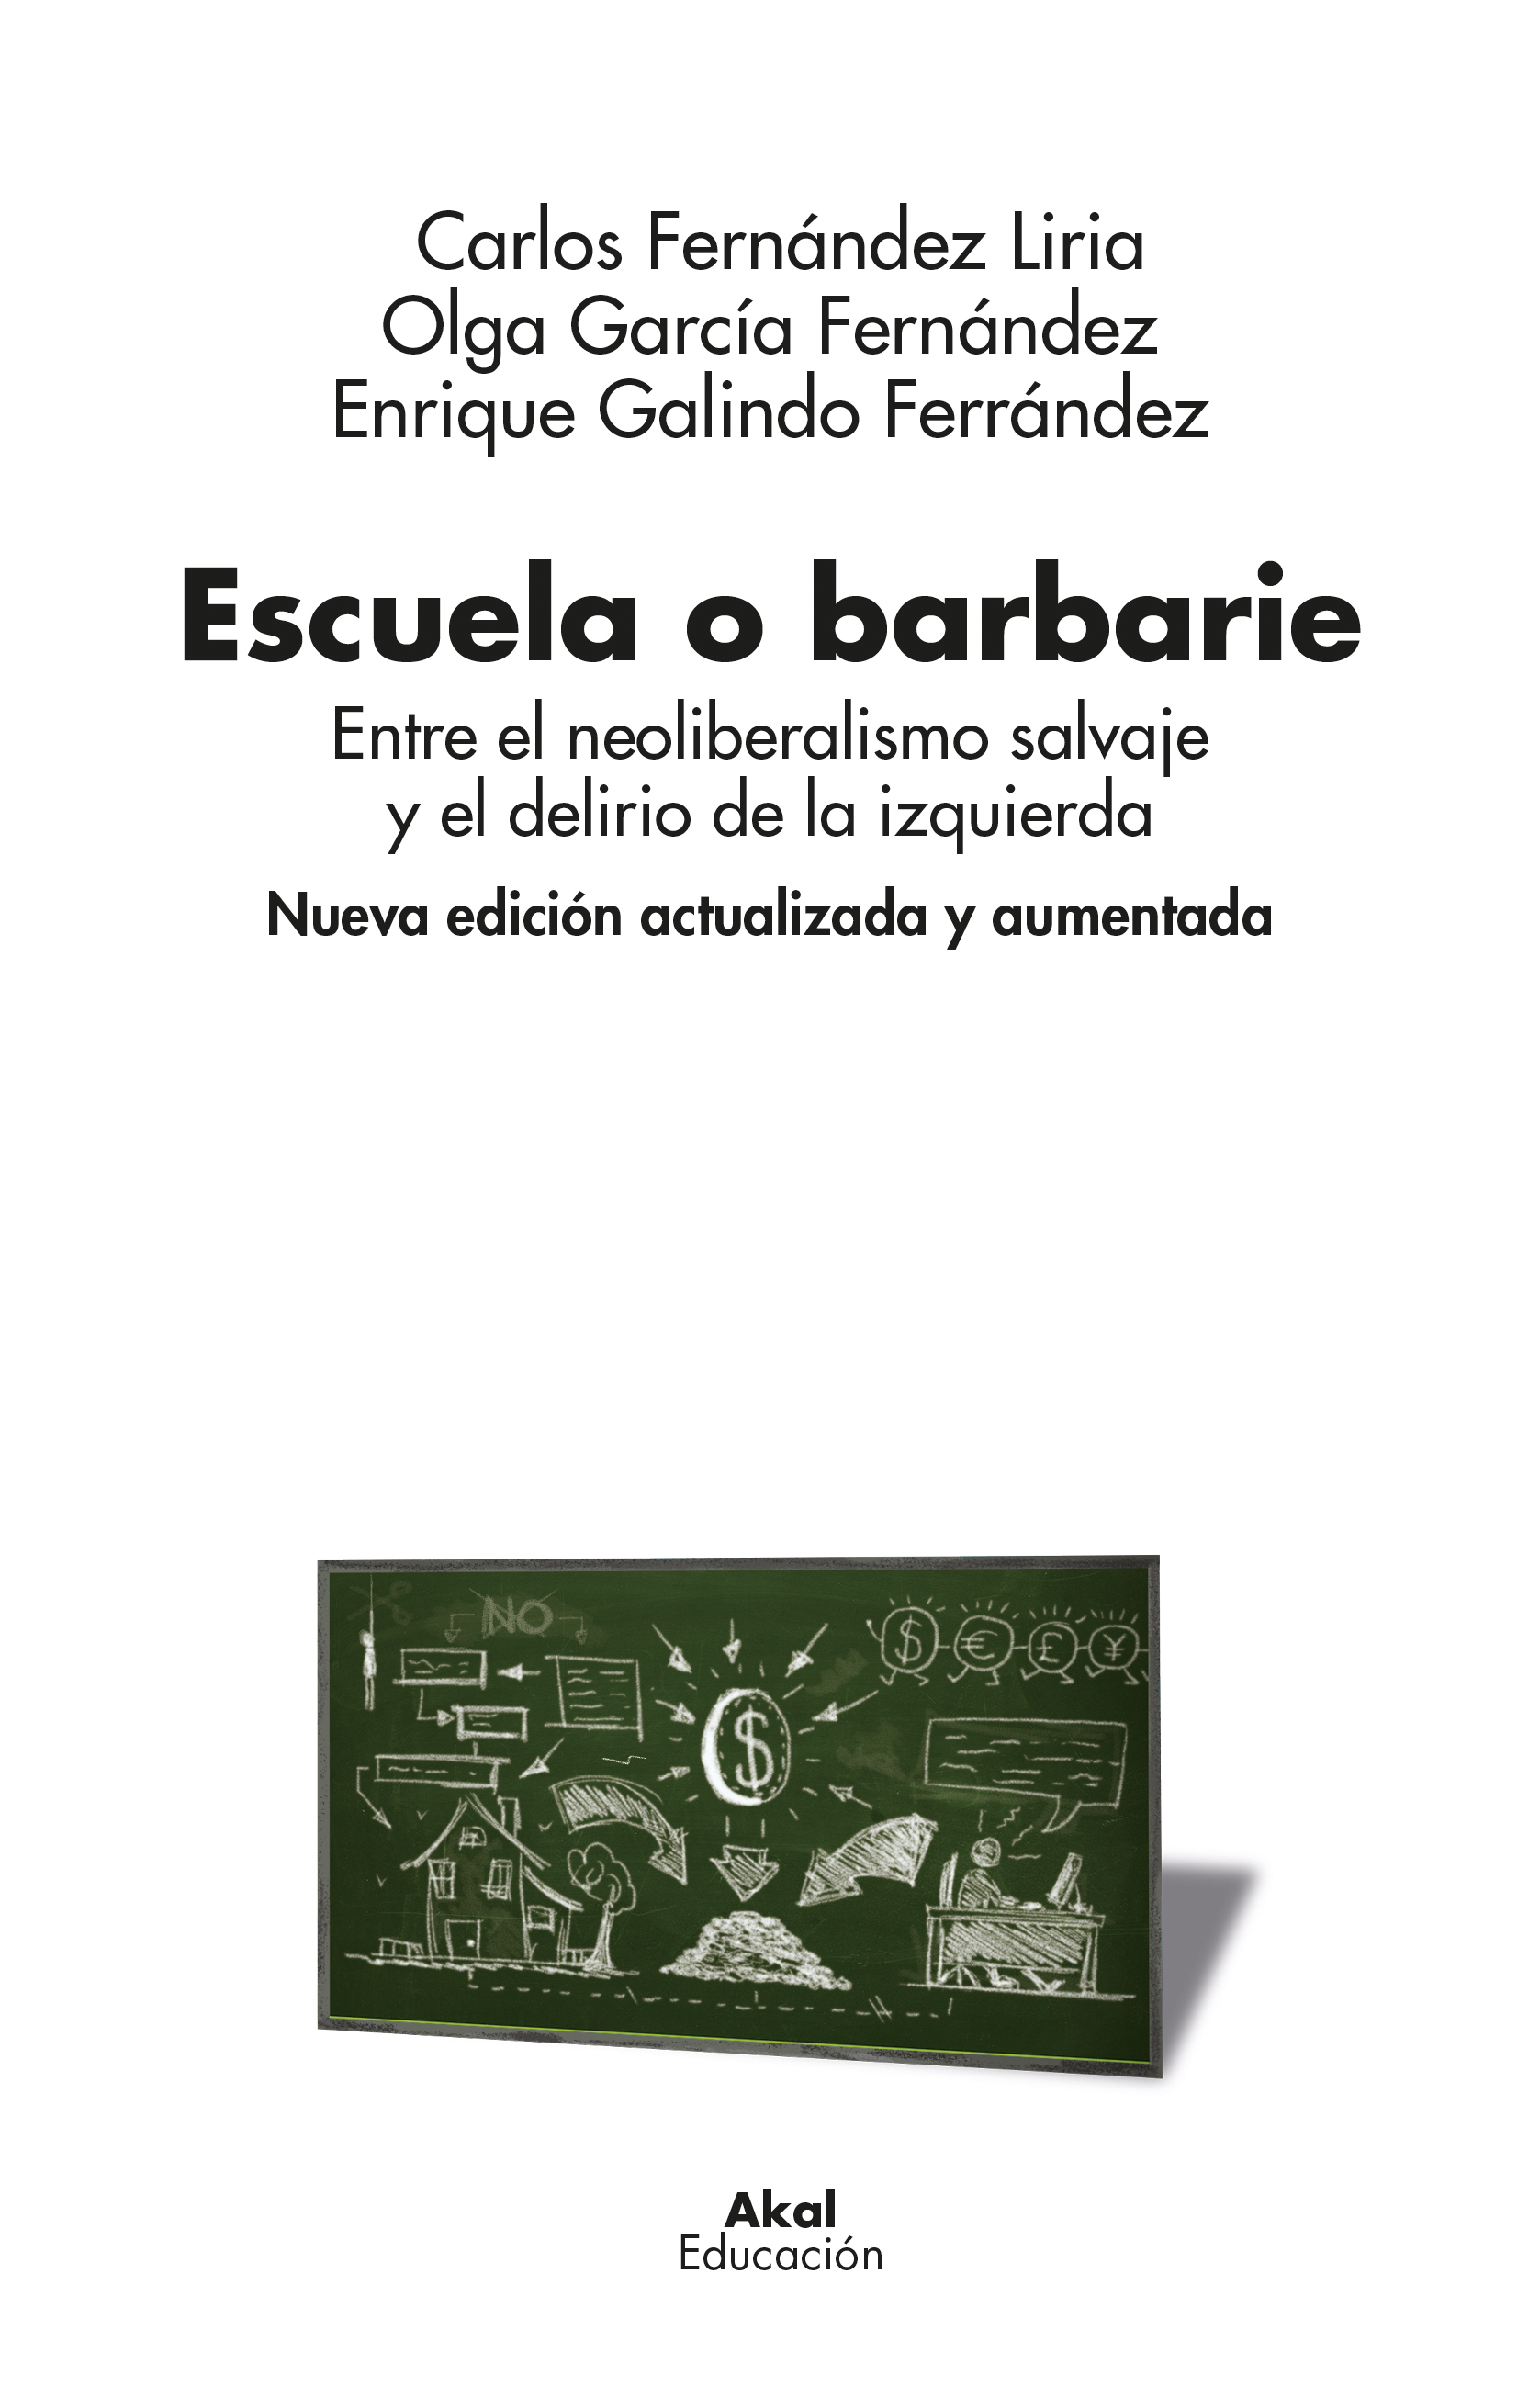 ESCUELA O BARBARIE - Enrique Galindo Ferrández | Olga García Fernández | Carlos Fernández Liria